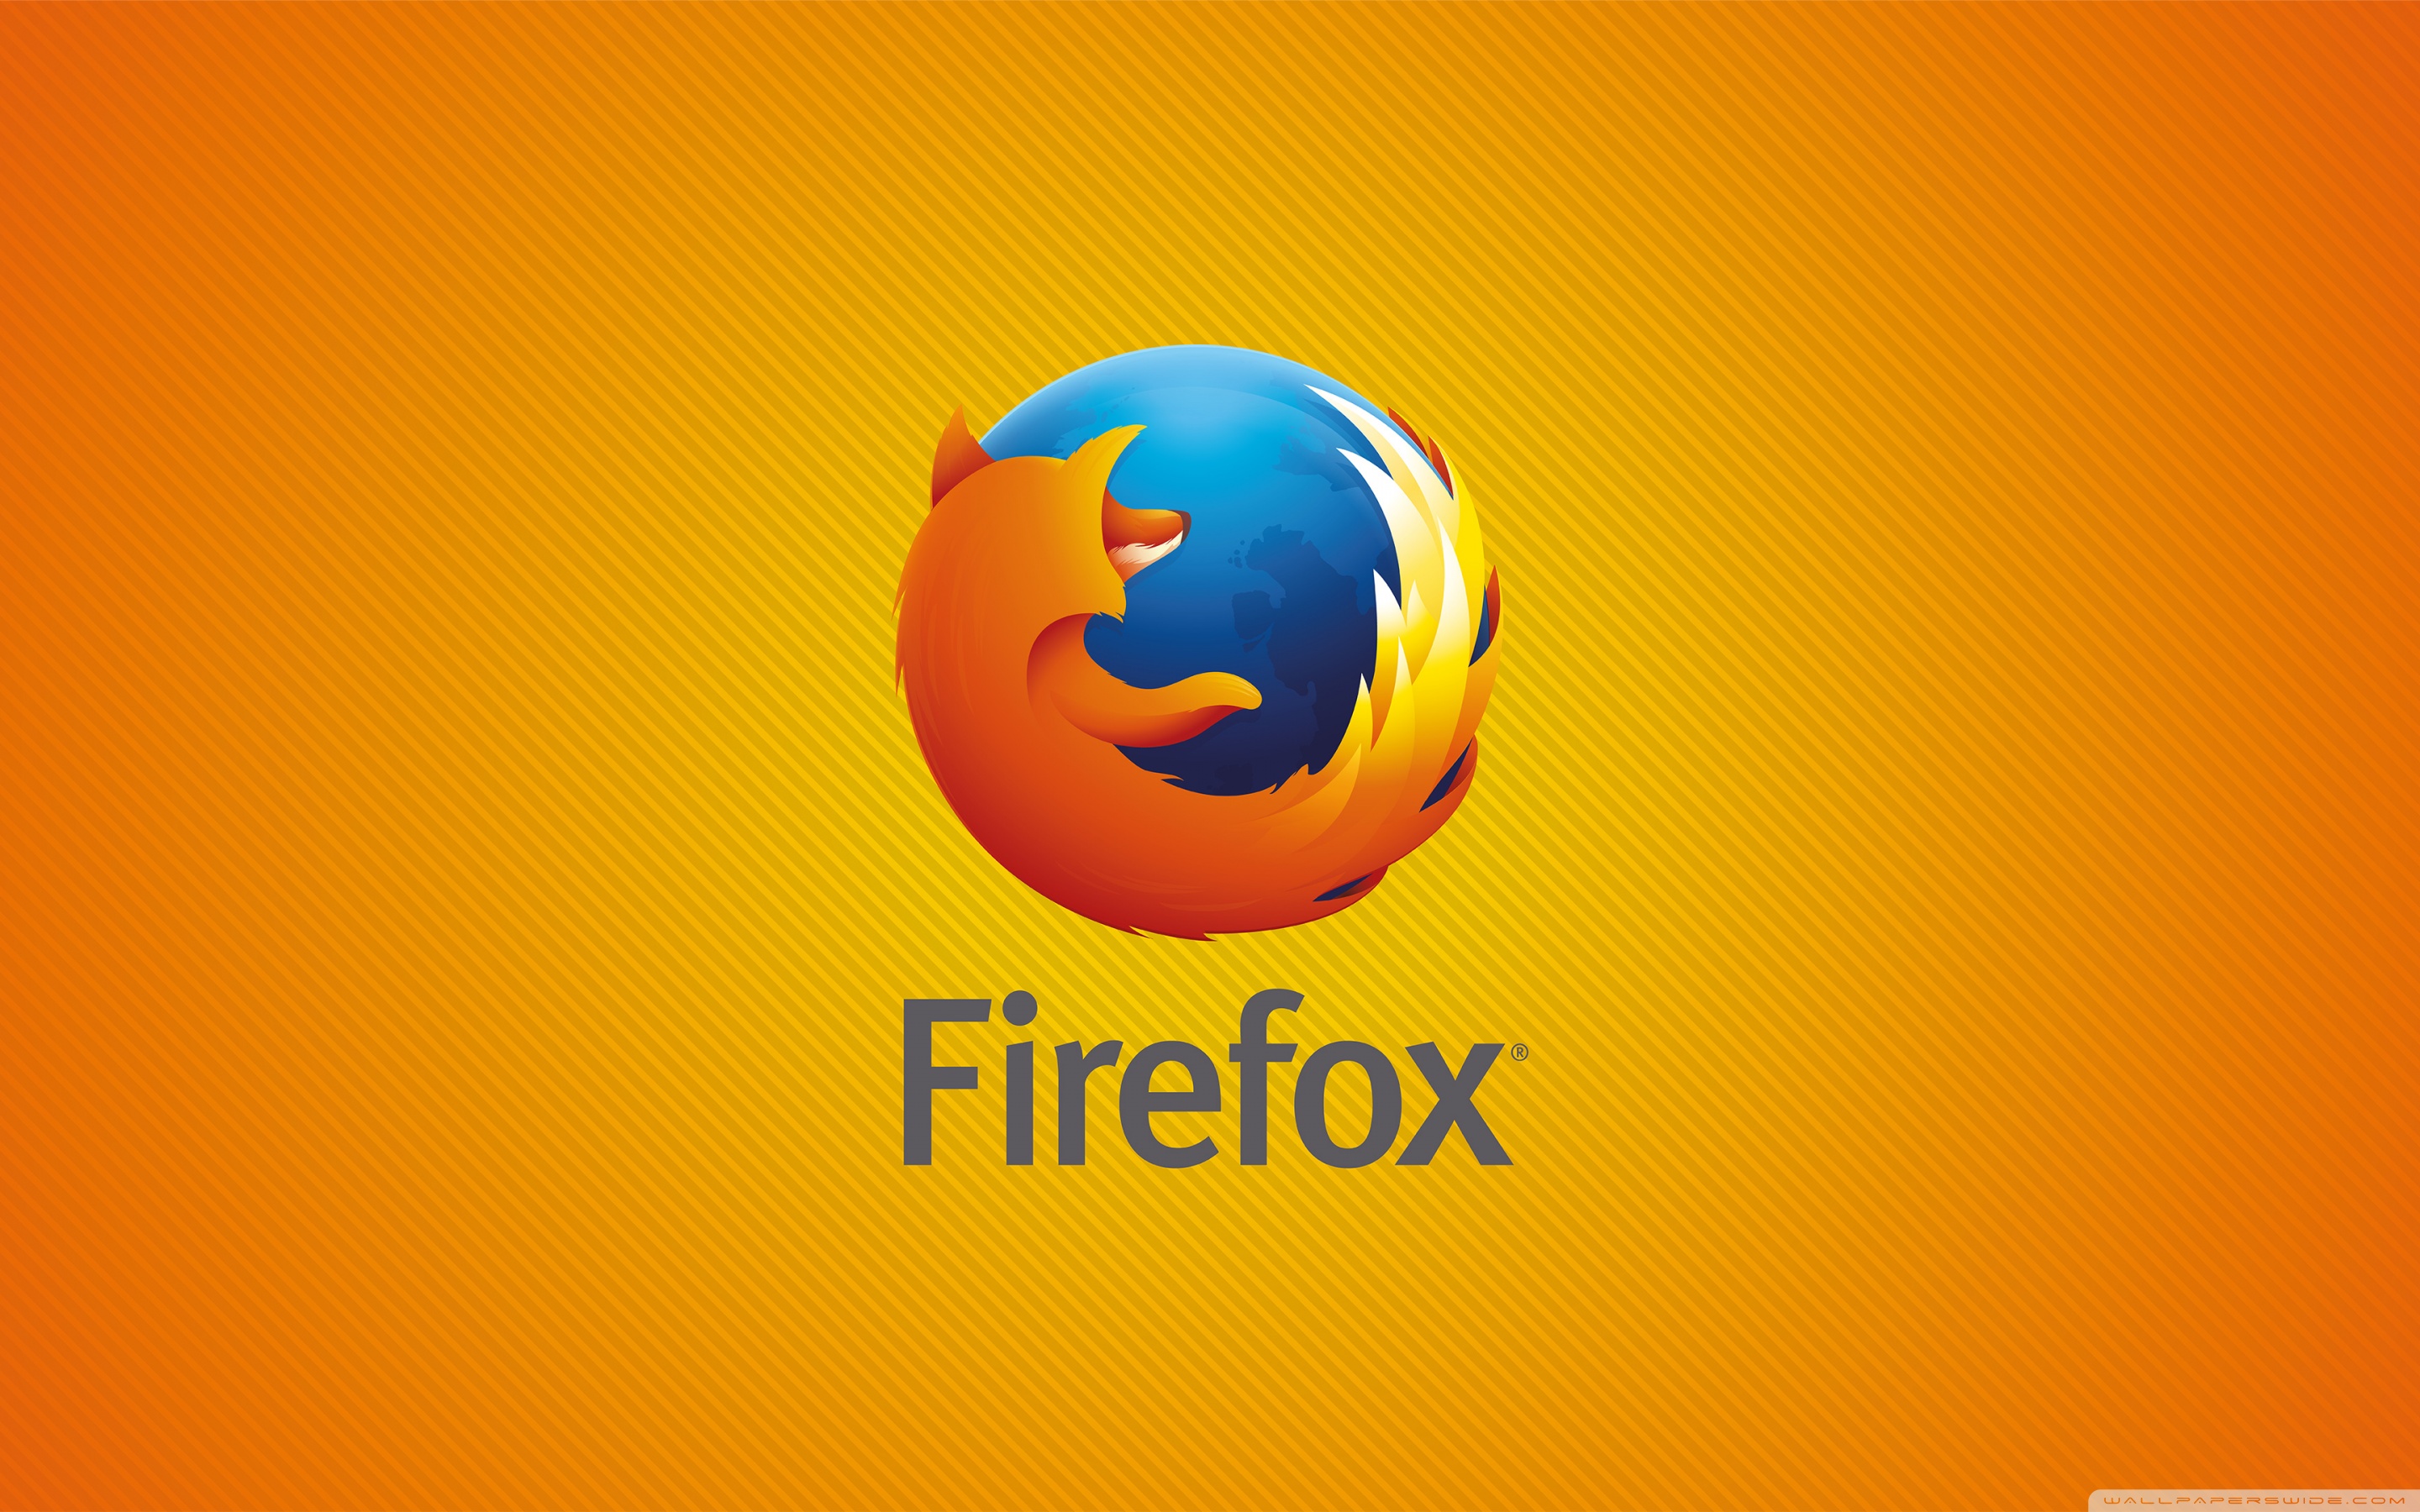 Firefox Stripes 4k HD Desktop Wallpaper For Wide Ultra